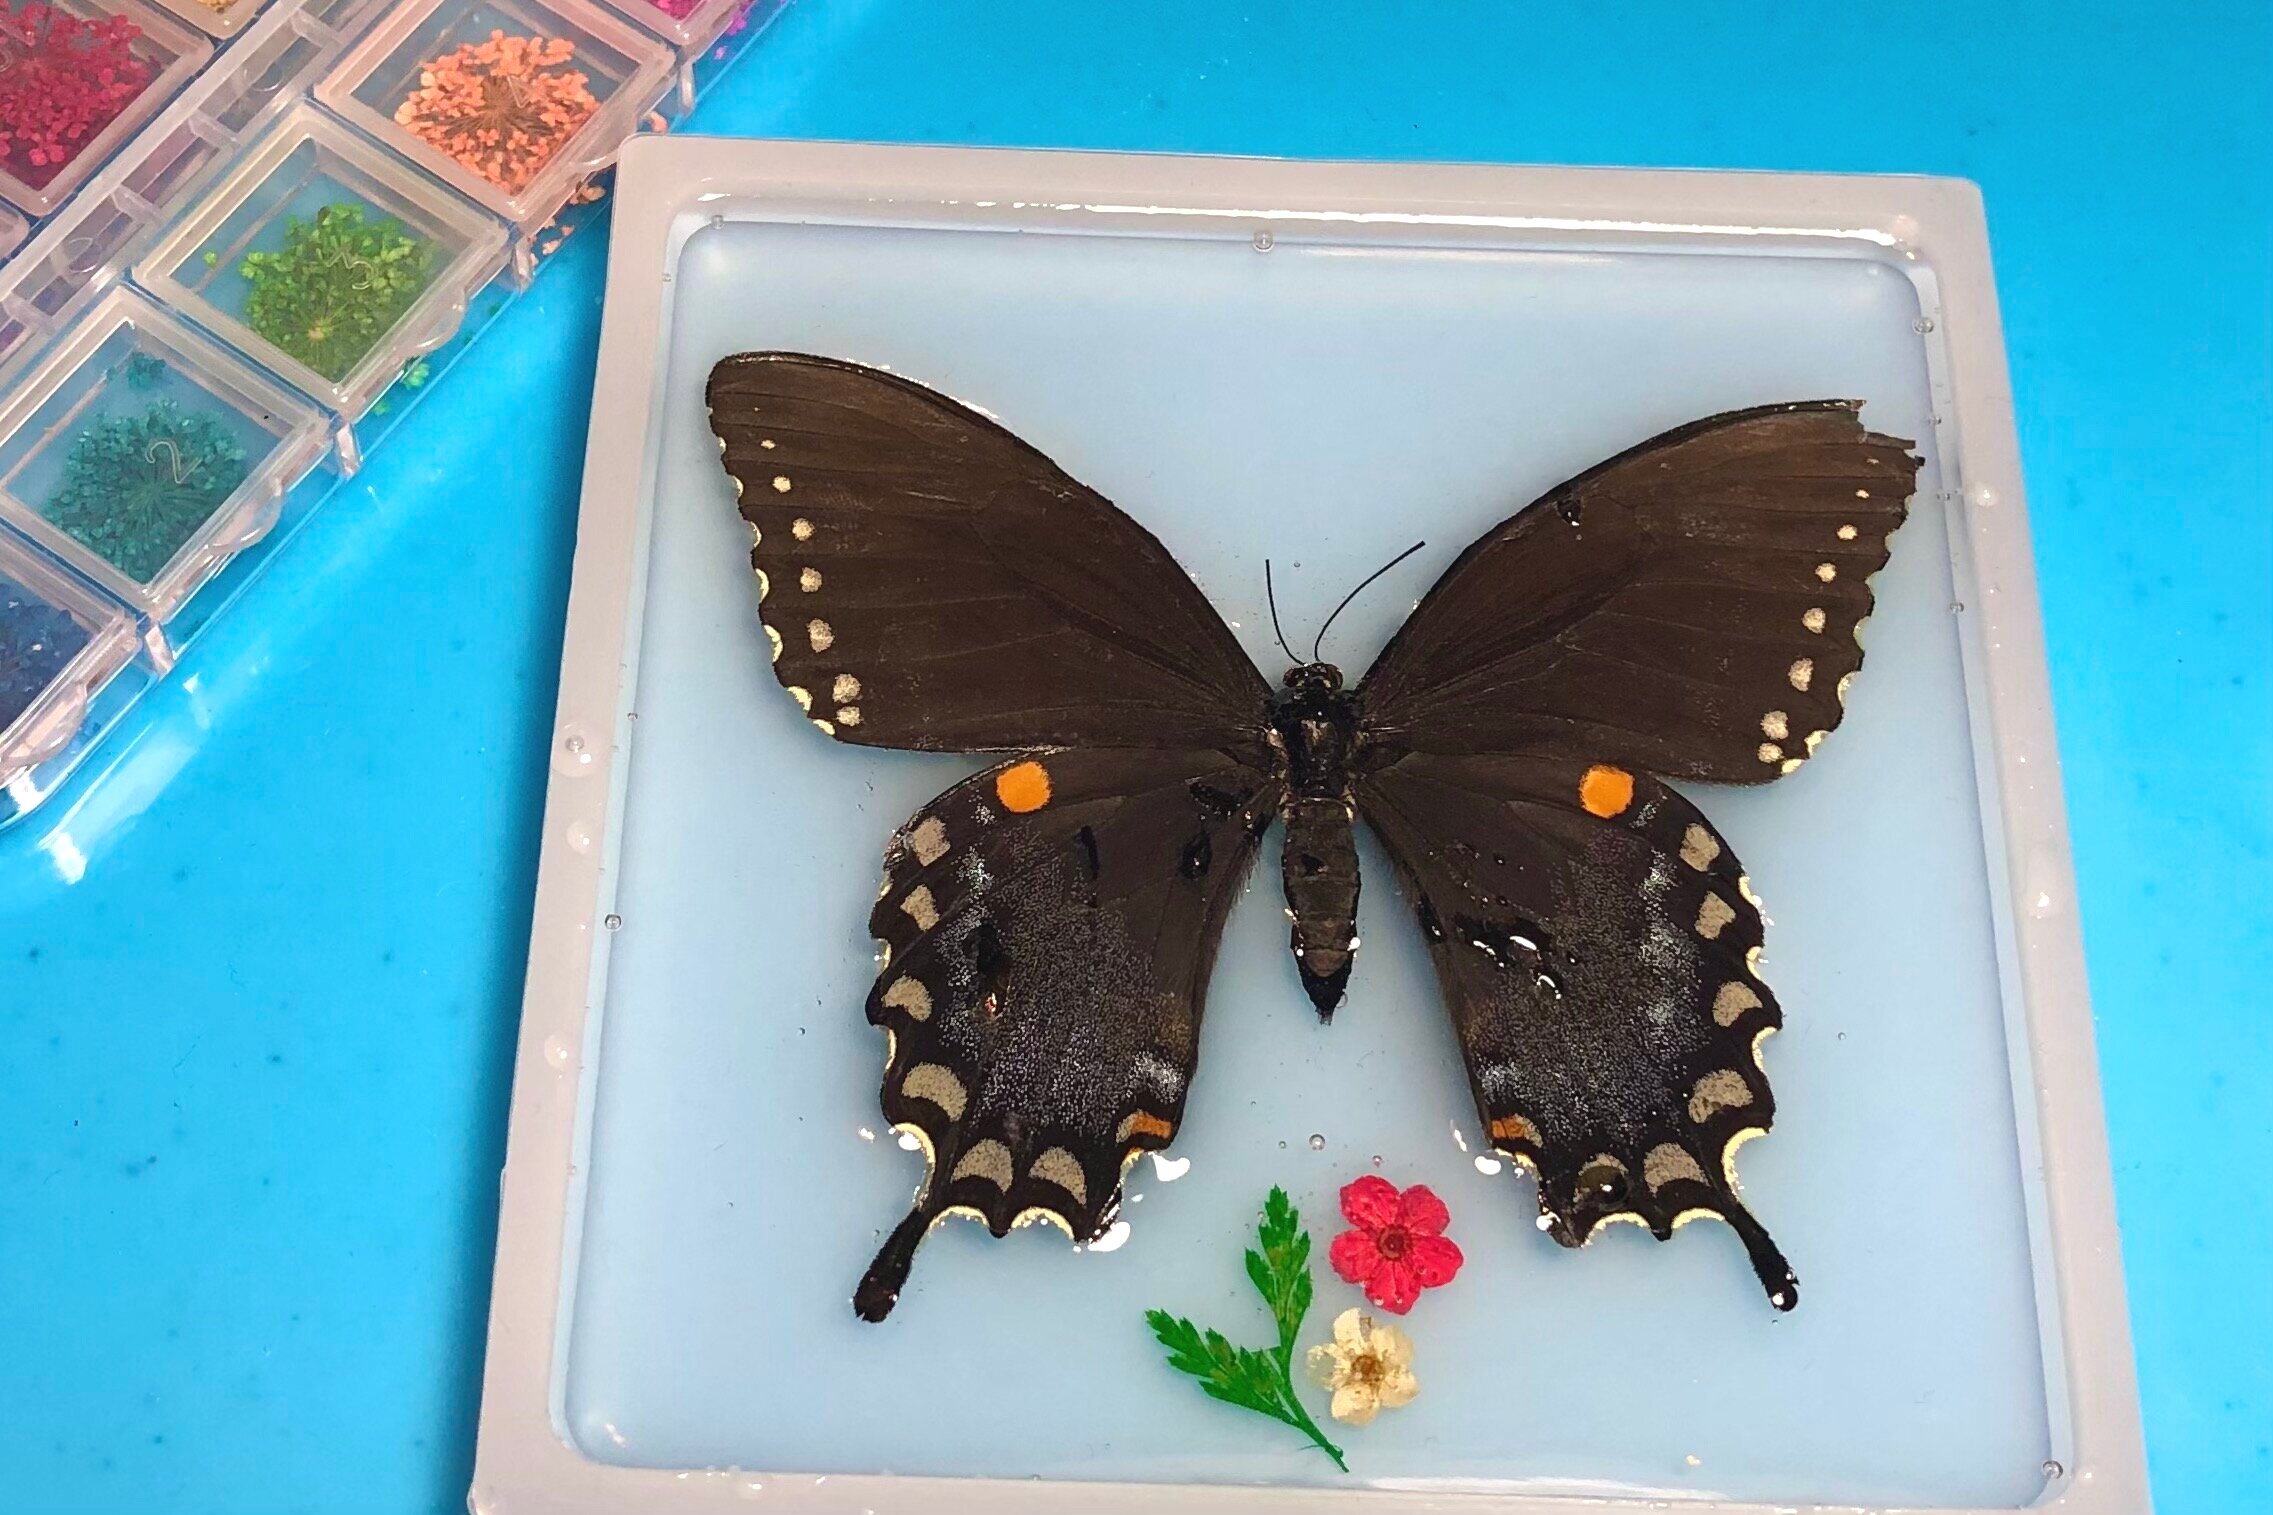 Butterfly in resin